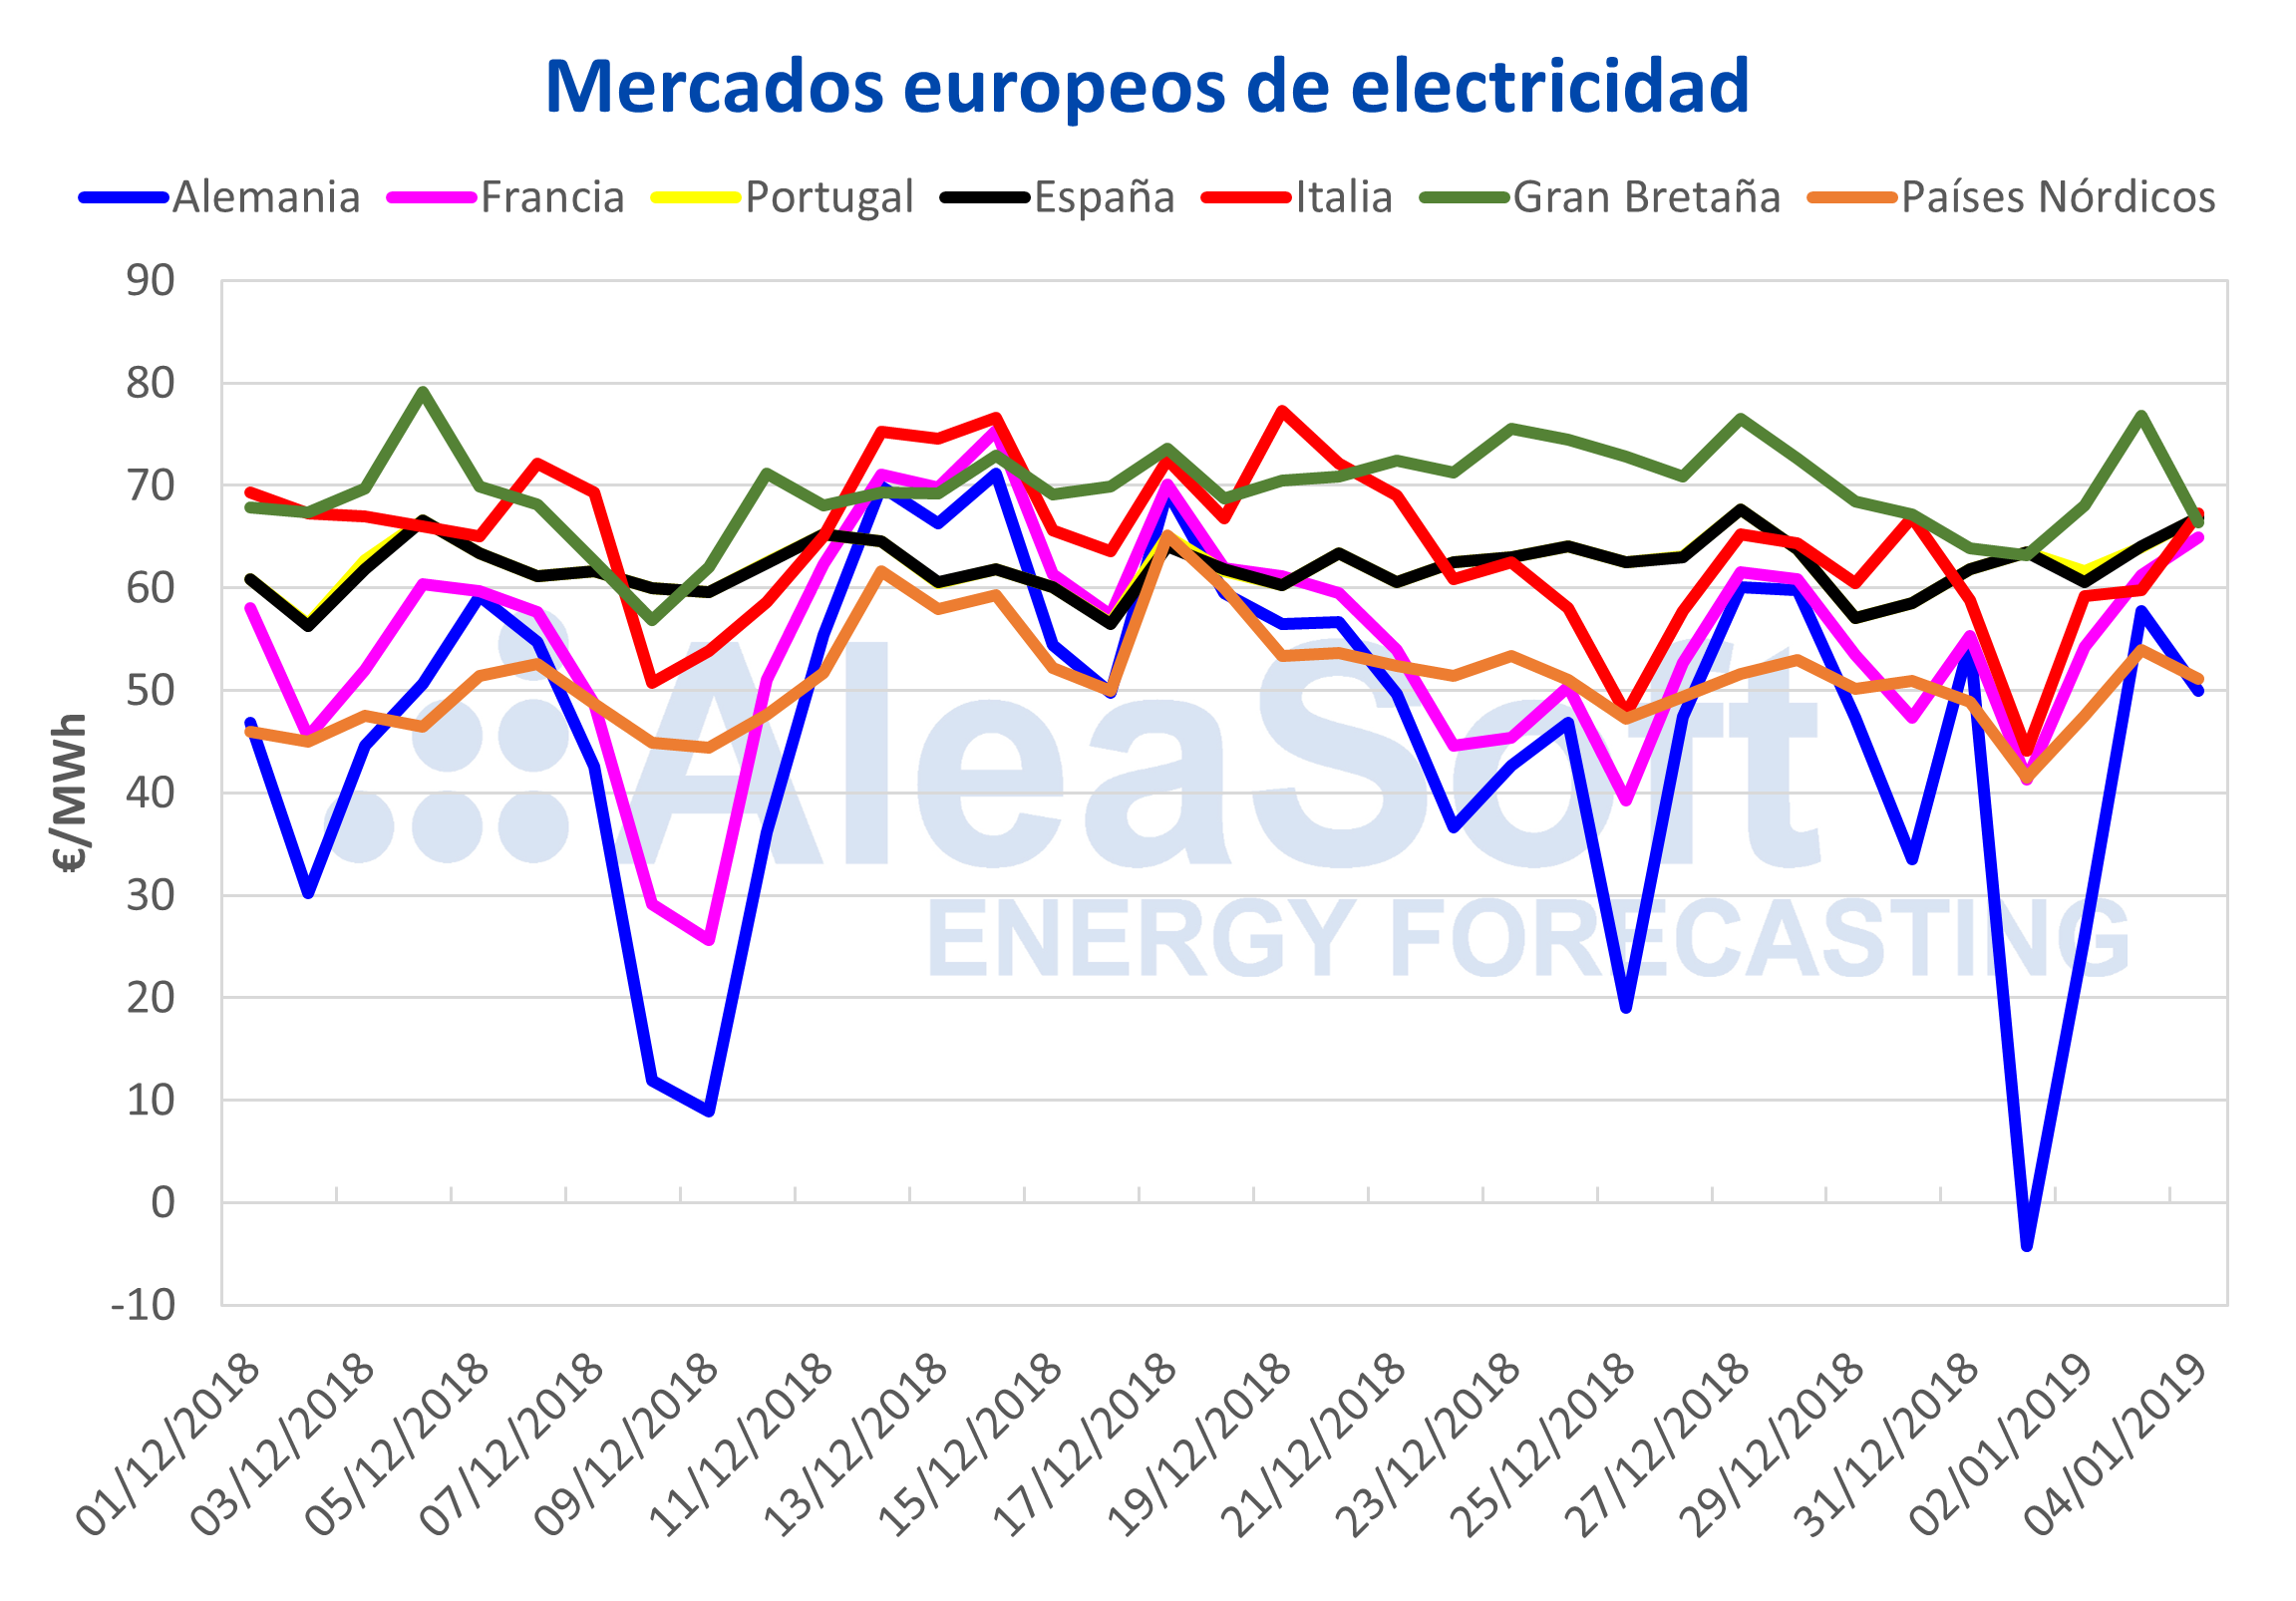 AleaSoft - Mercados europeos de electricidad